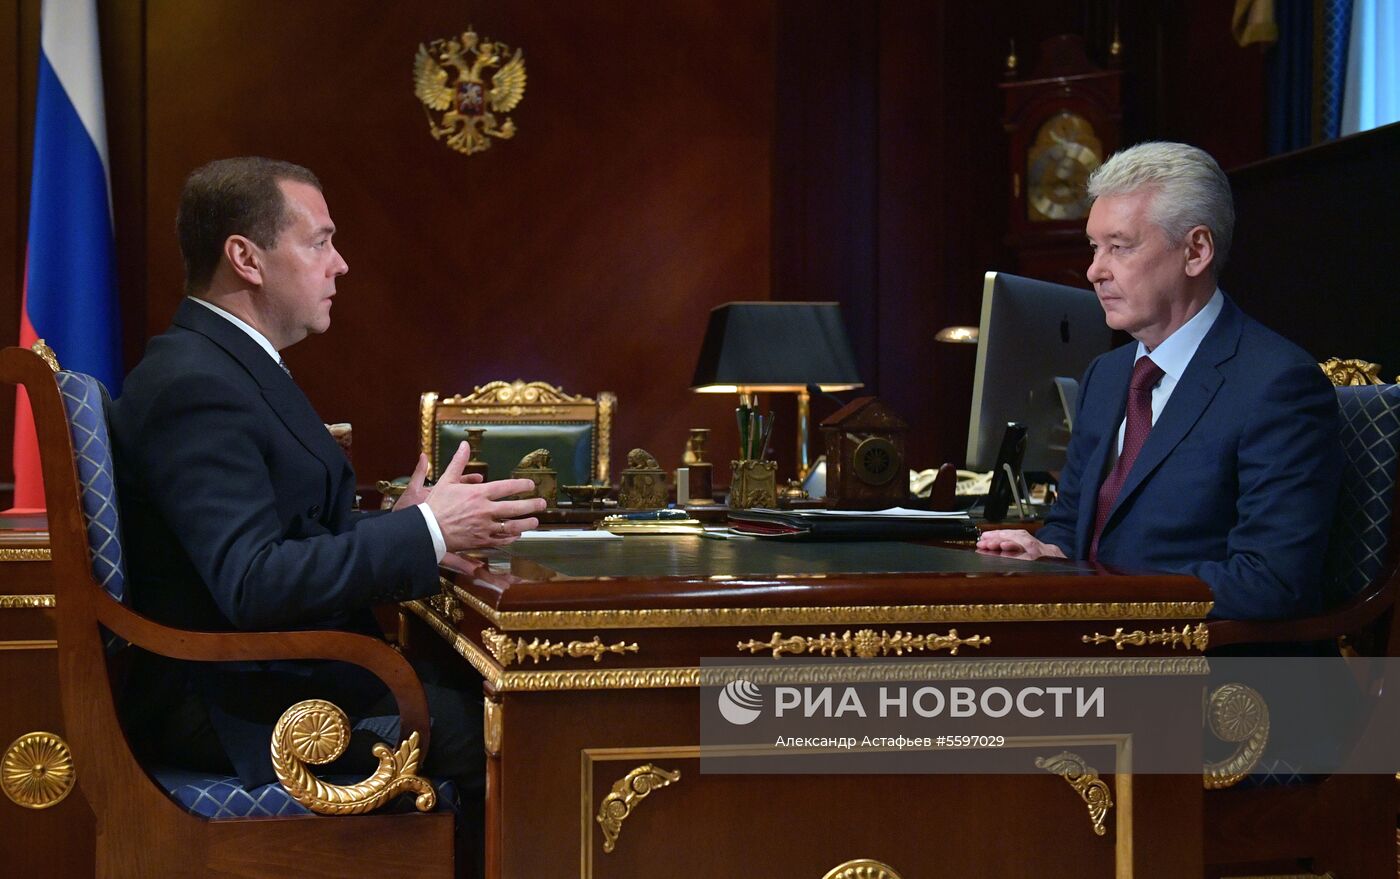 Рабочая встреча премьер-министра РФ Д. Медведева с мэром Москвы С. Собяниным